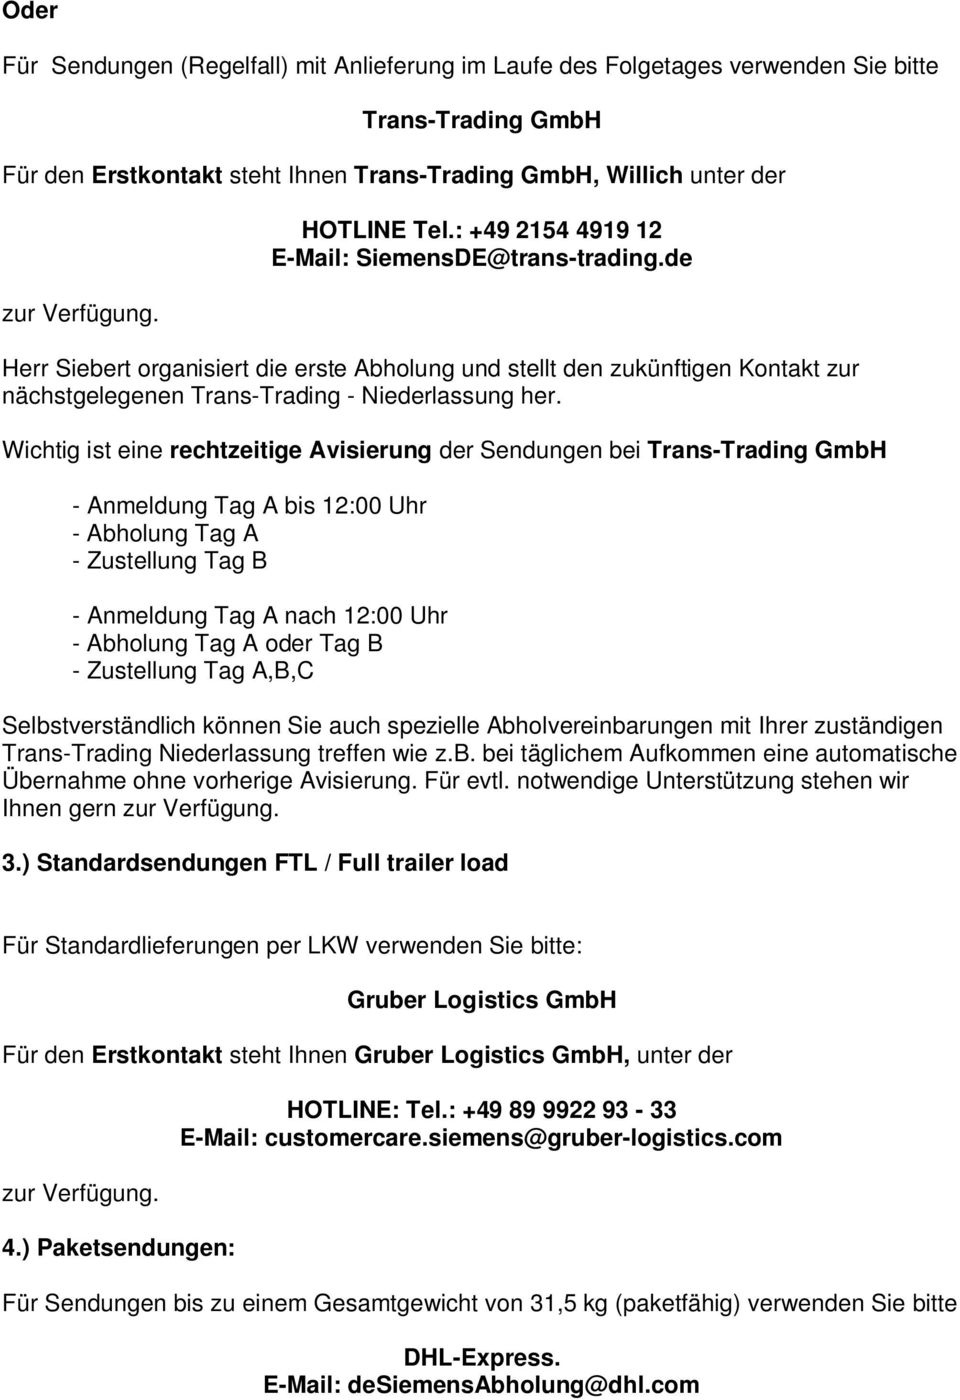 Wichtig ist eine rechtzeitige Avisierung der Sendungen bei Trans-Trading GmbH - Anmeldung Tag A bis 12:00 Uhr - Abholung Tag A - Zustellung Tag B - Anmeldung Tag A nach 12:00 Uhr - Abholung Tag A